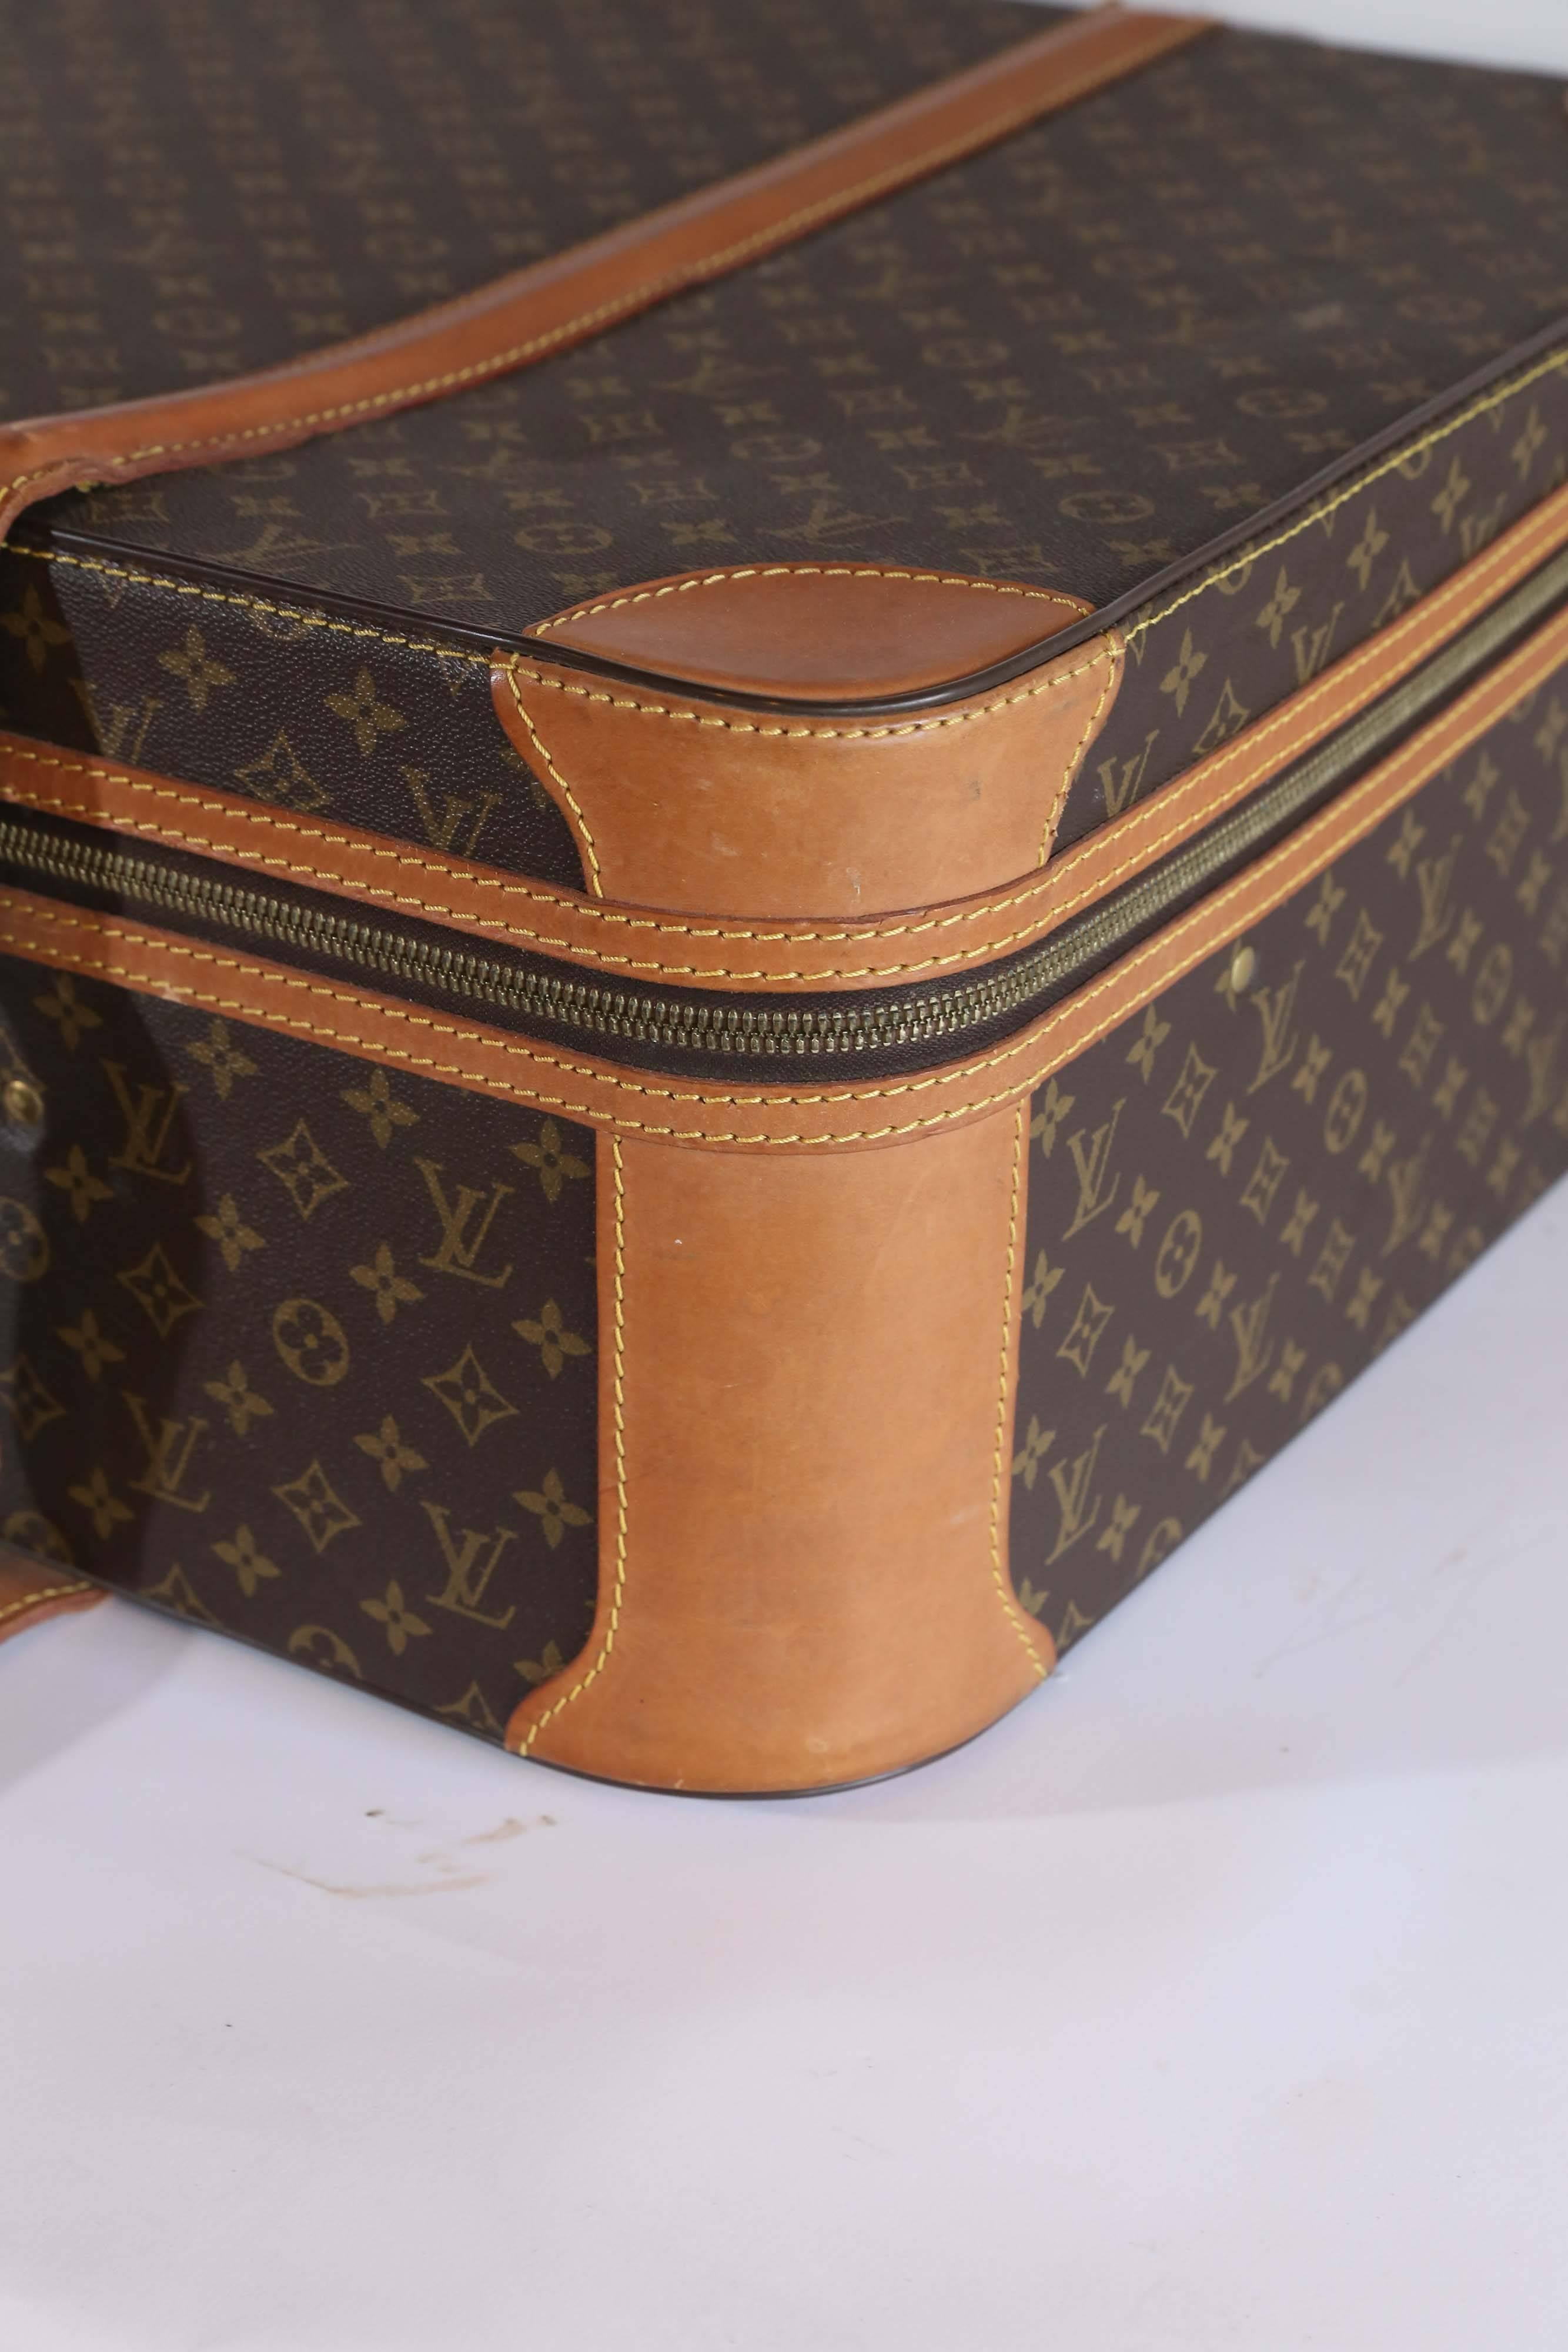 Leather Vintage Louis Vuitton Suitcase